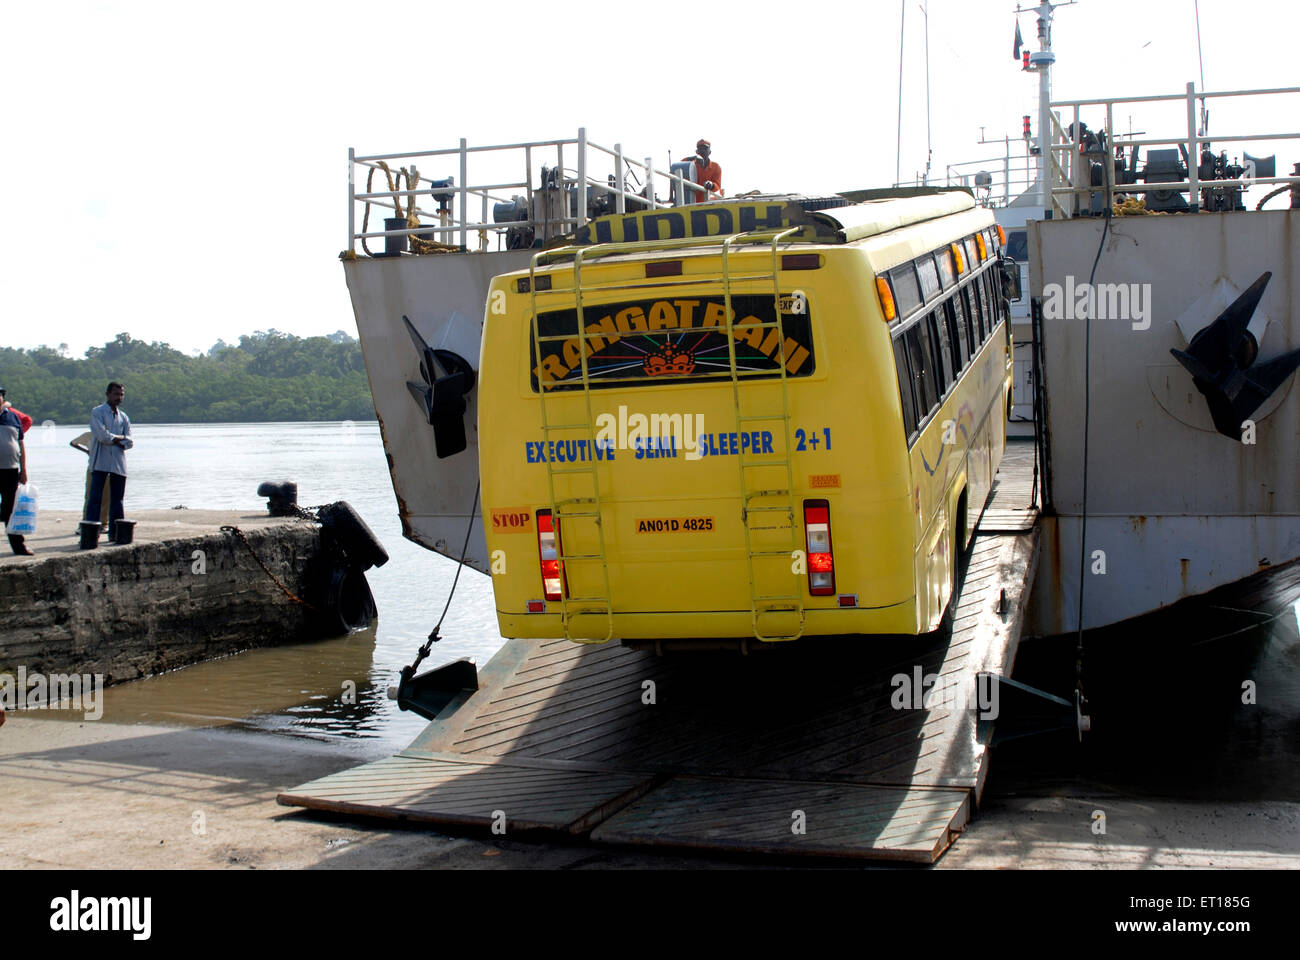 Laden der Bus auf dem lastkahn Fähre Port Blair Andaman und Nicobar Inseln Golf von Bengalen Indien - Rmm 145545 Stockfoto